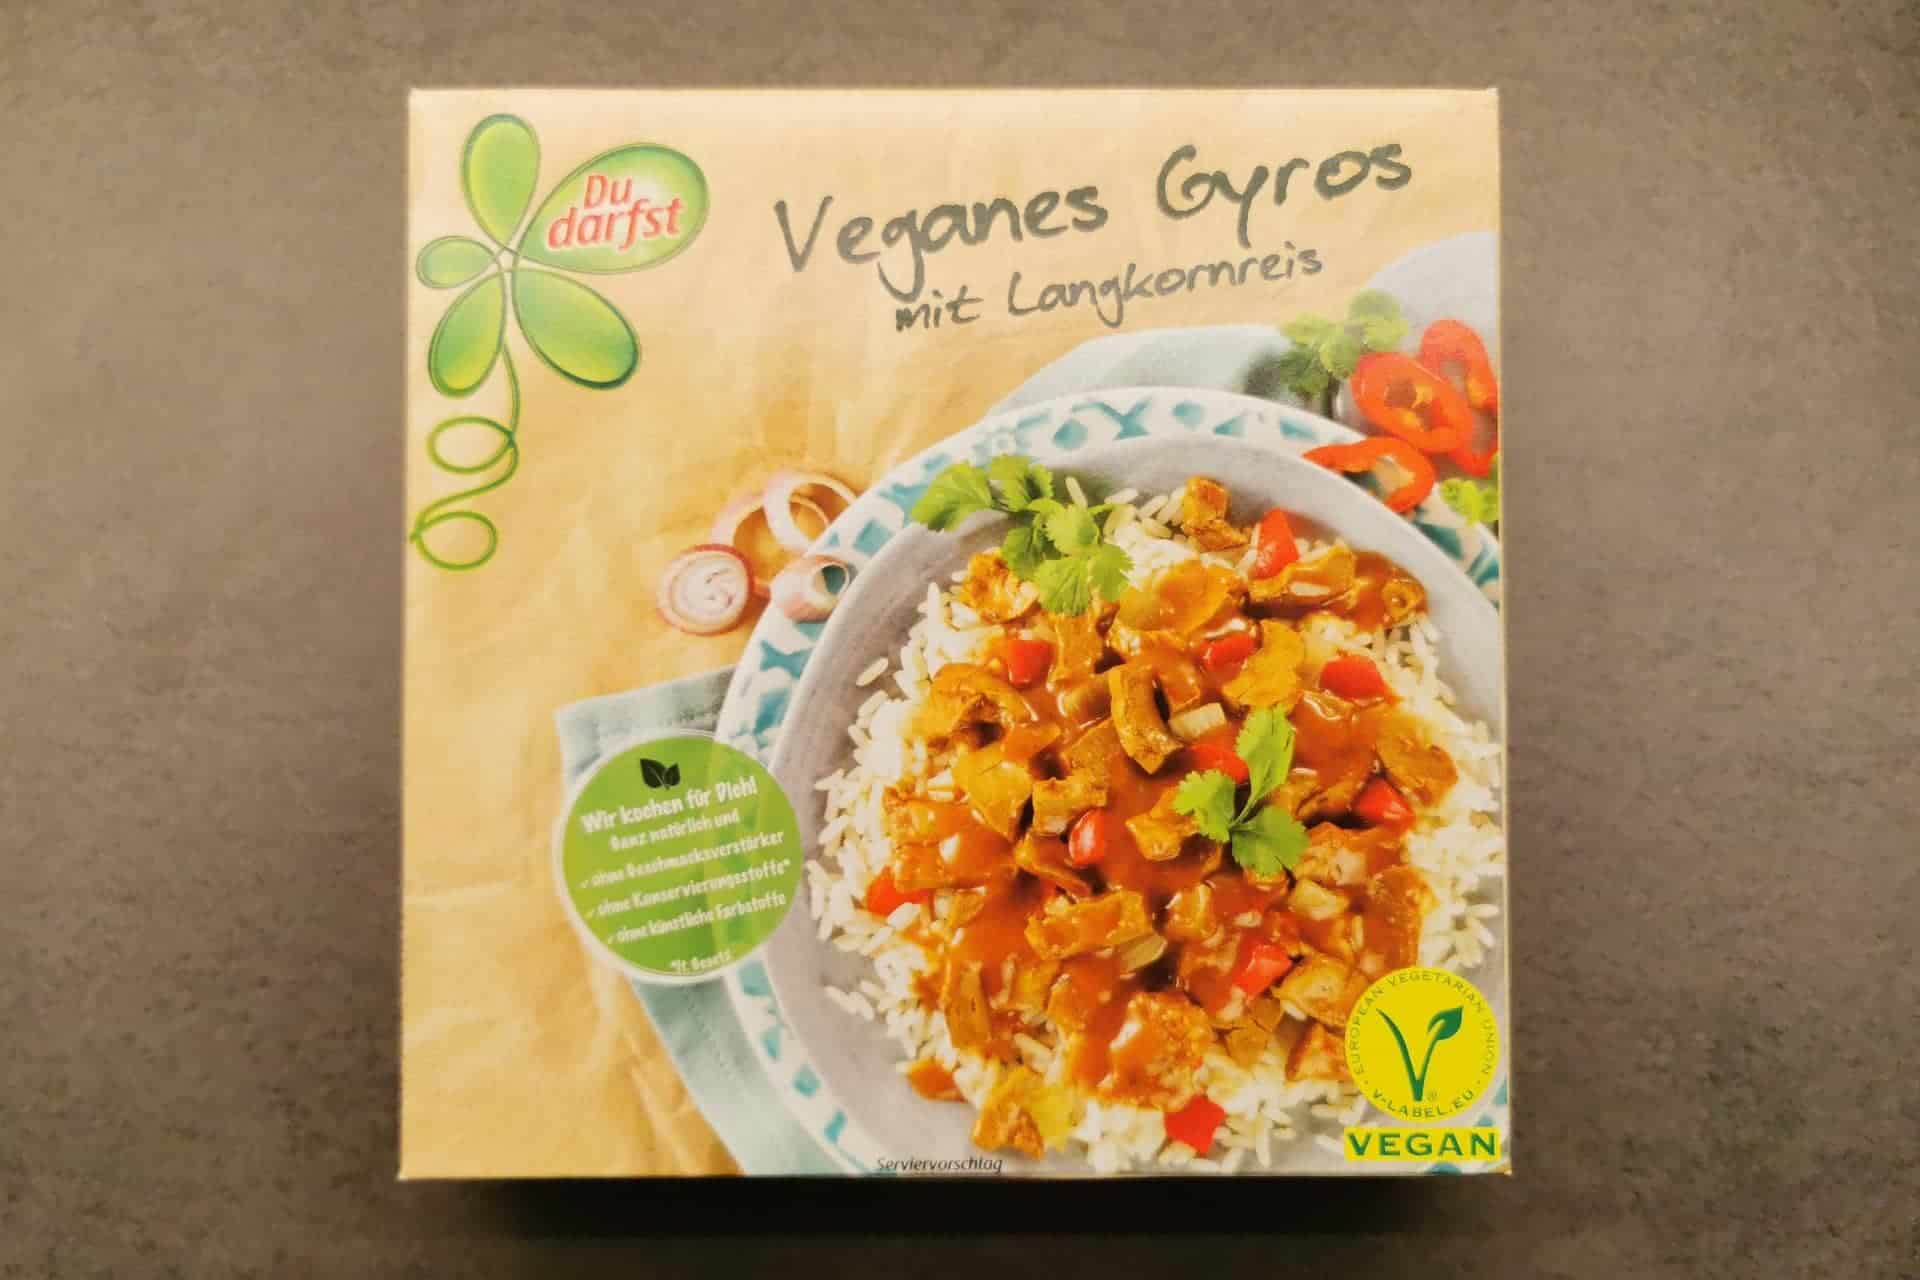 Du darfst - Veganes Gyros mit Reis